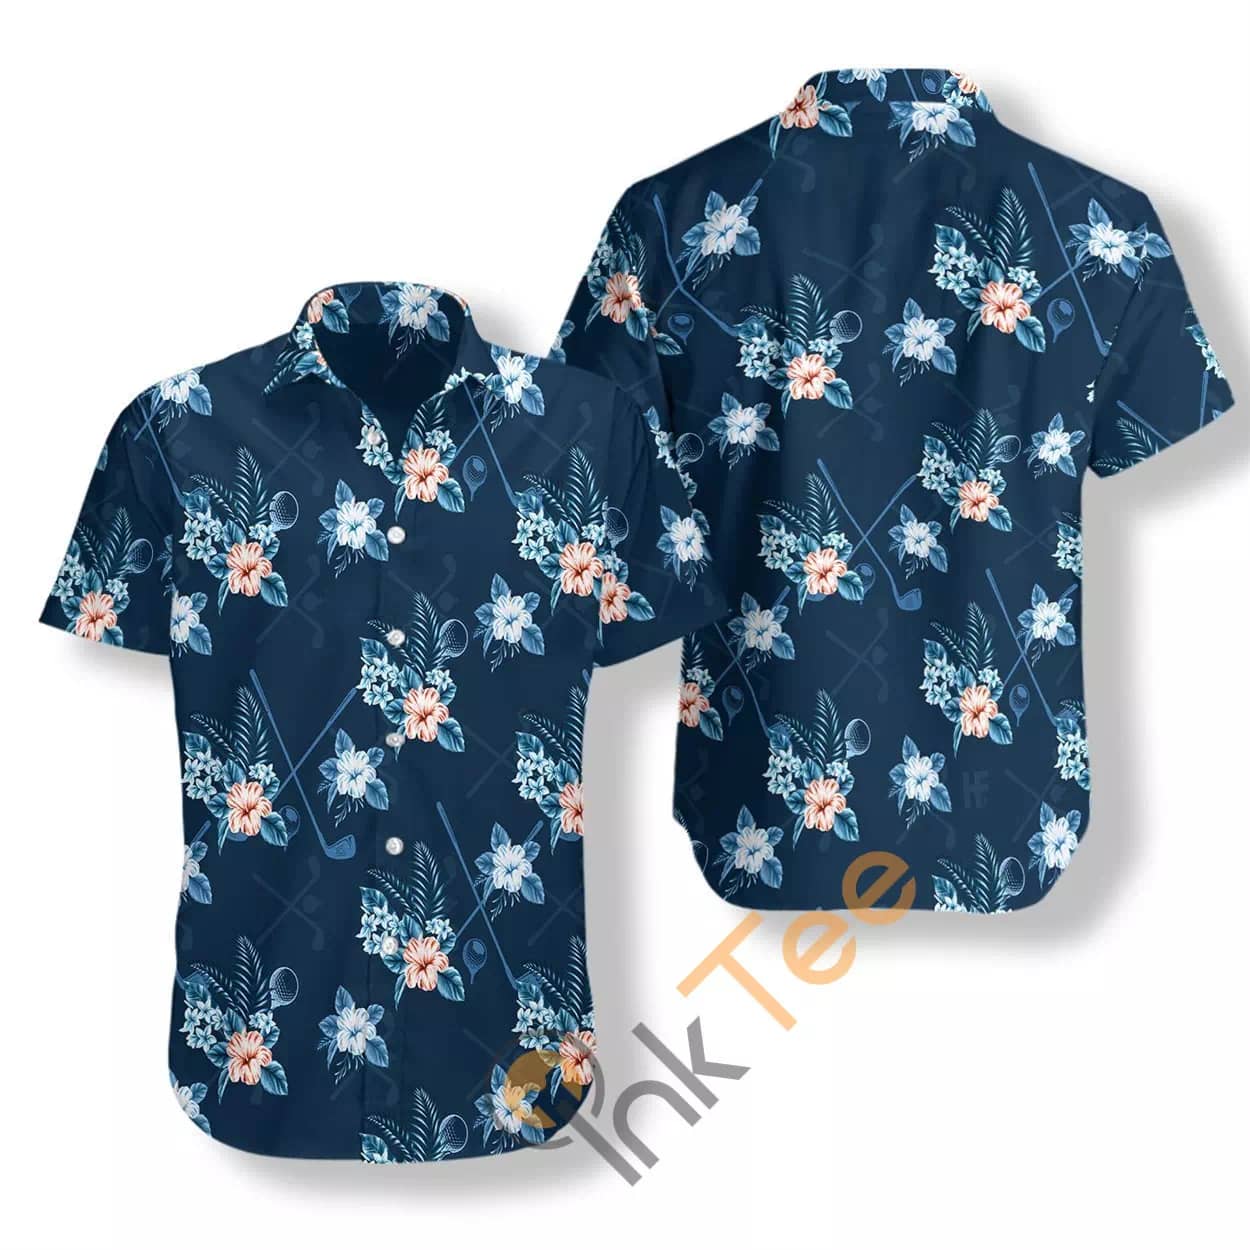 Tropical Golf 3 N540 Hawaiian shirts